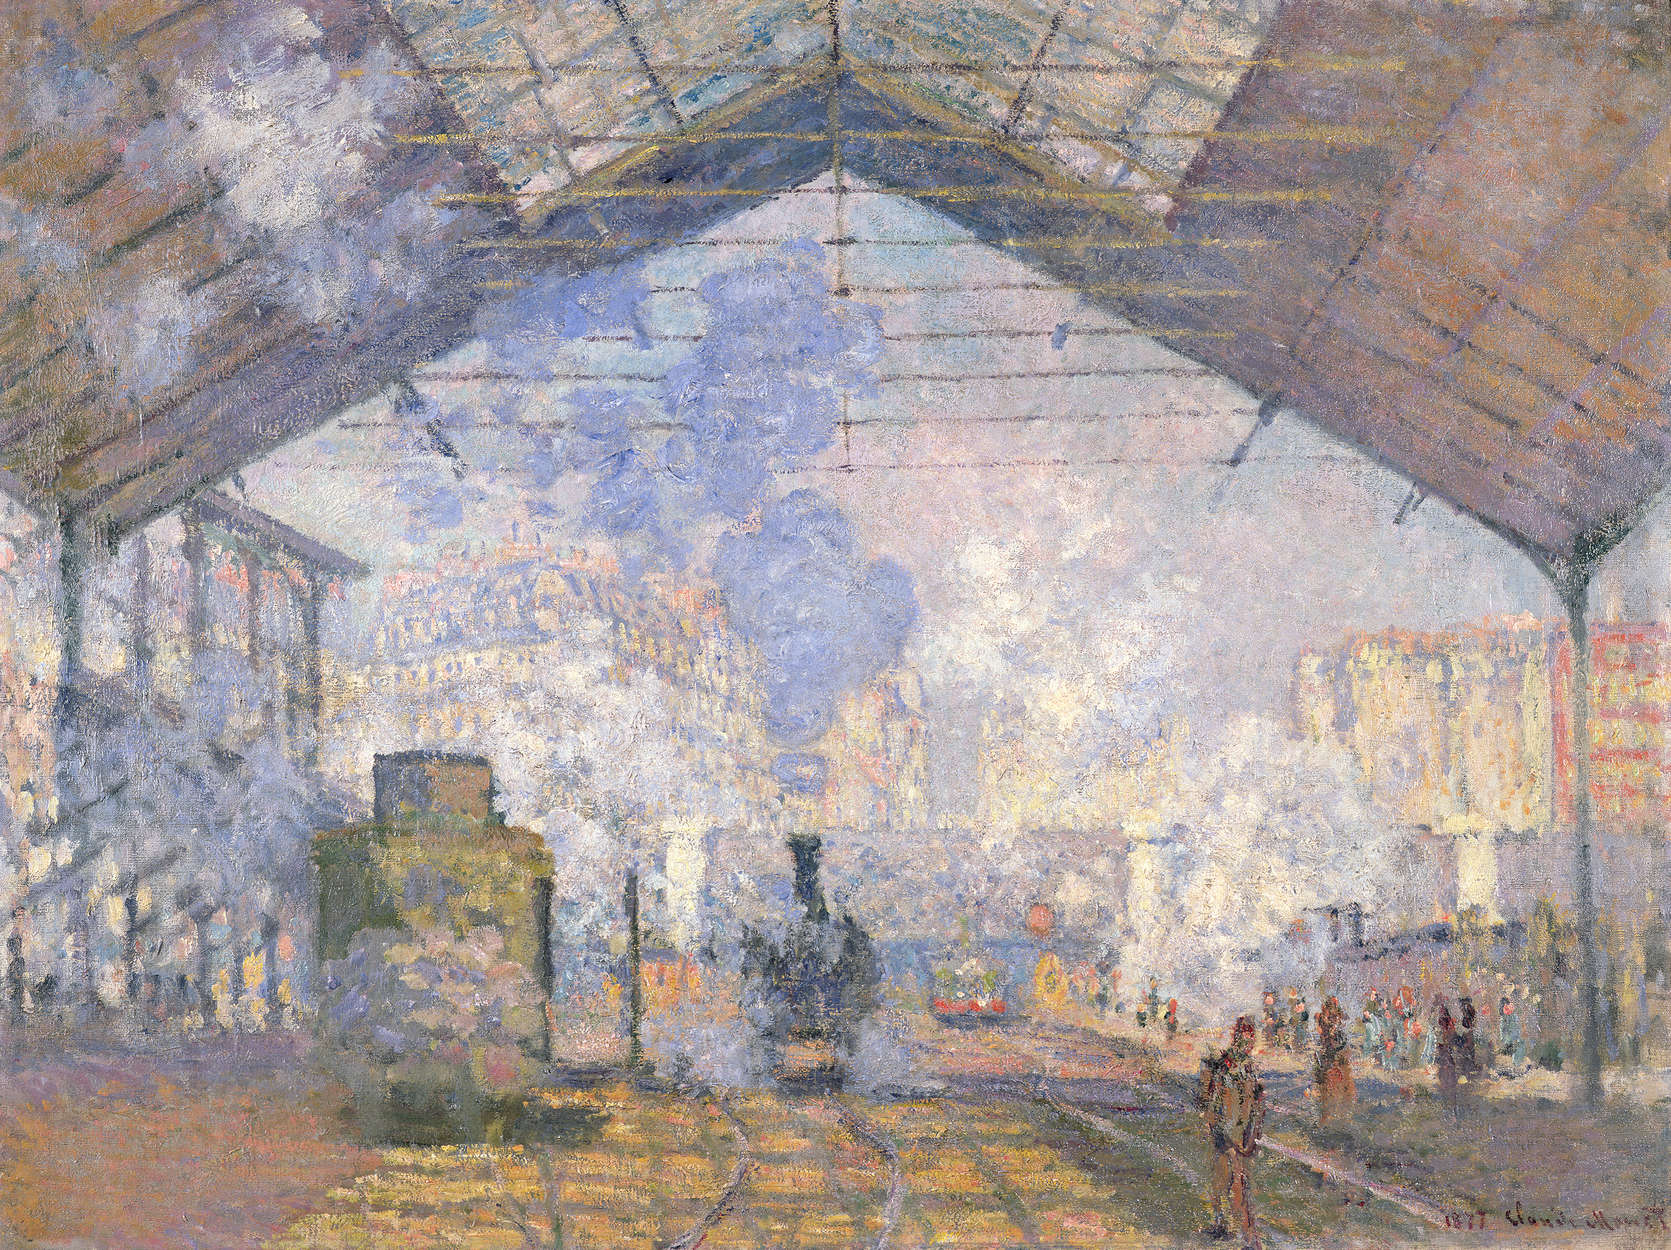             Papier peint panoramique "Gare St. Lazare" de Claude Monet
        